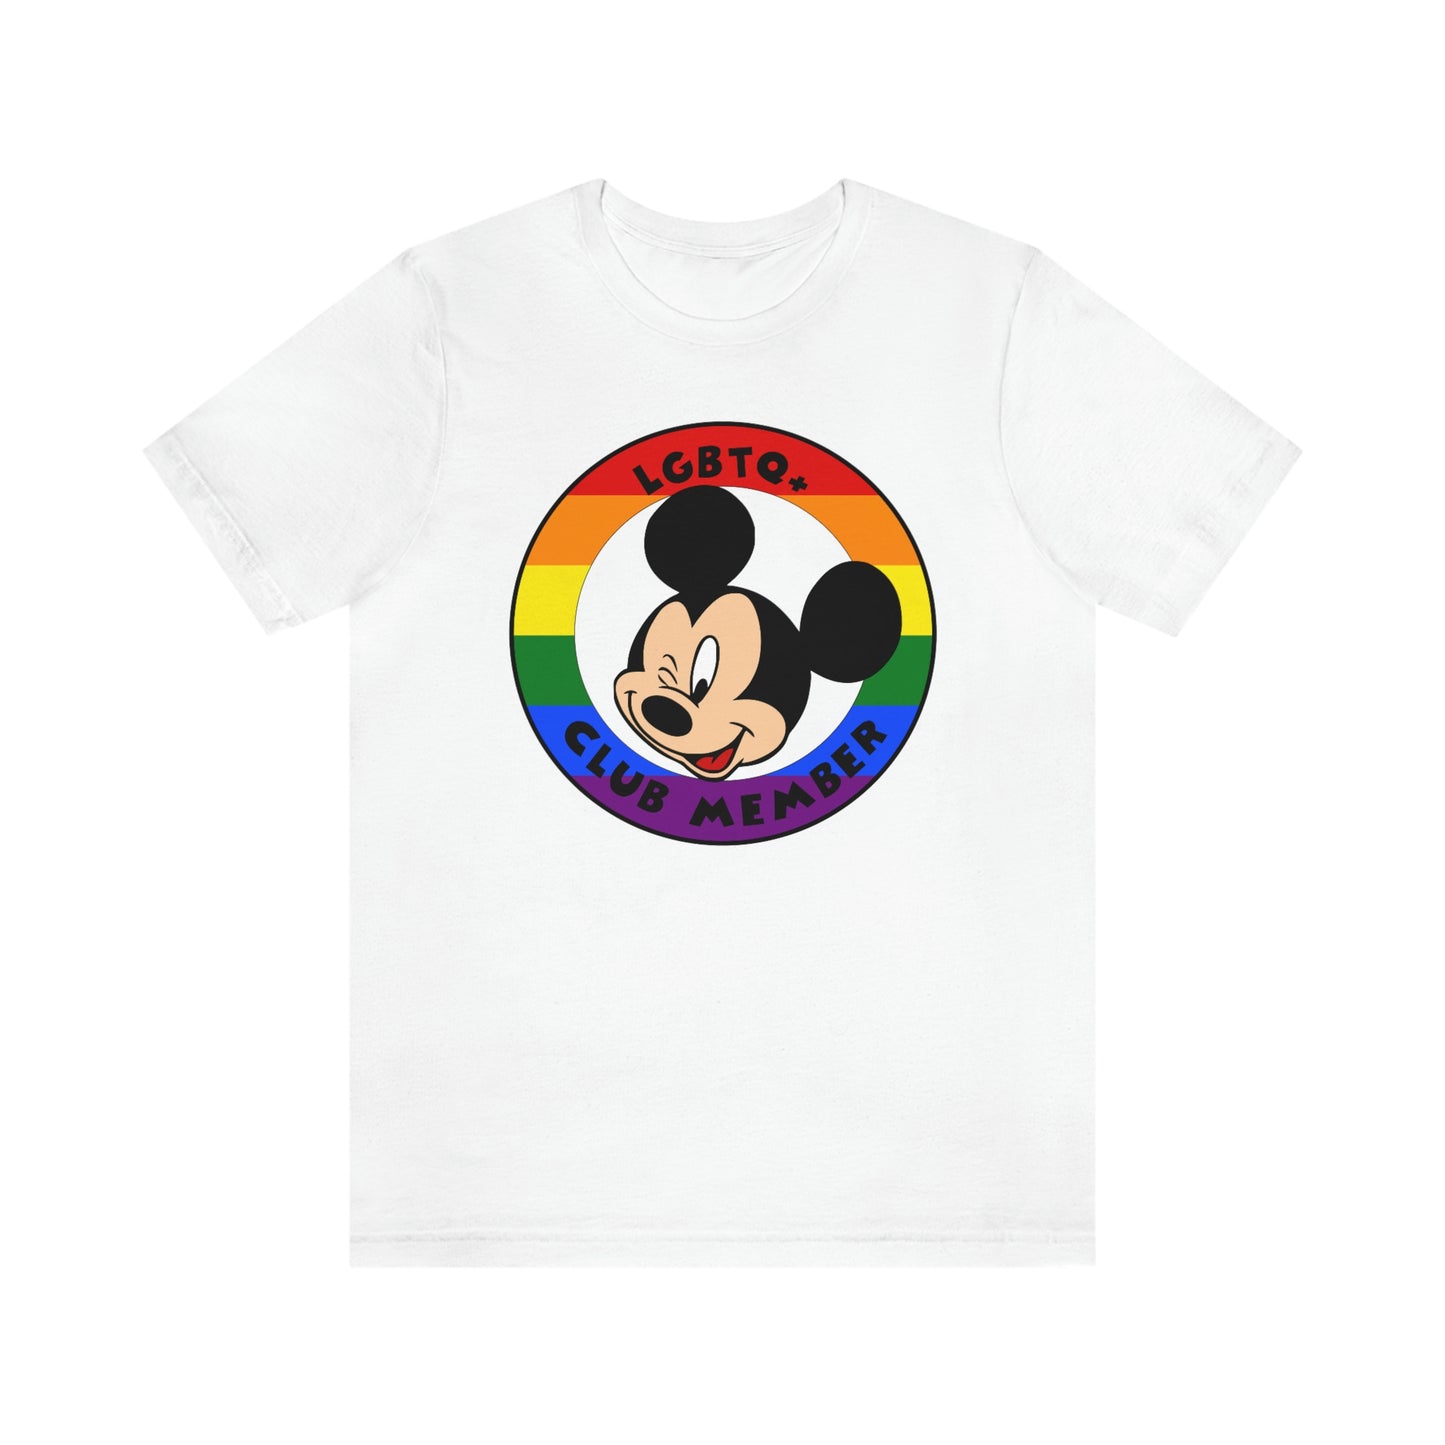 LGBTQ+ Mouse Club Camiseta unisex para adultos